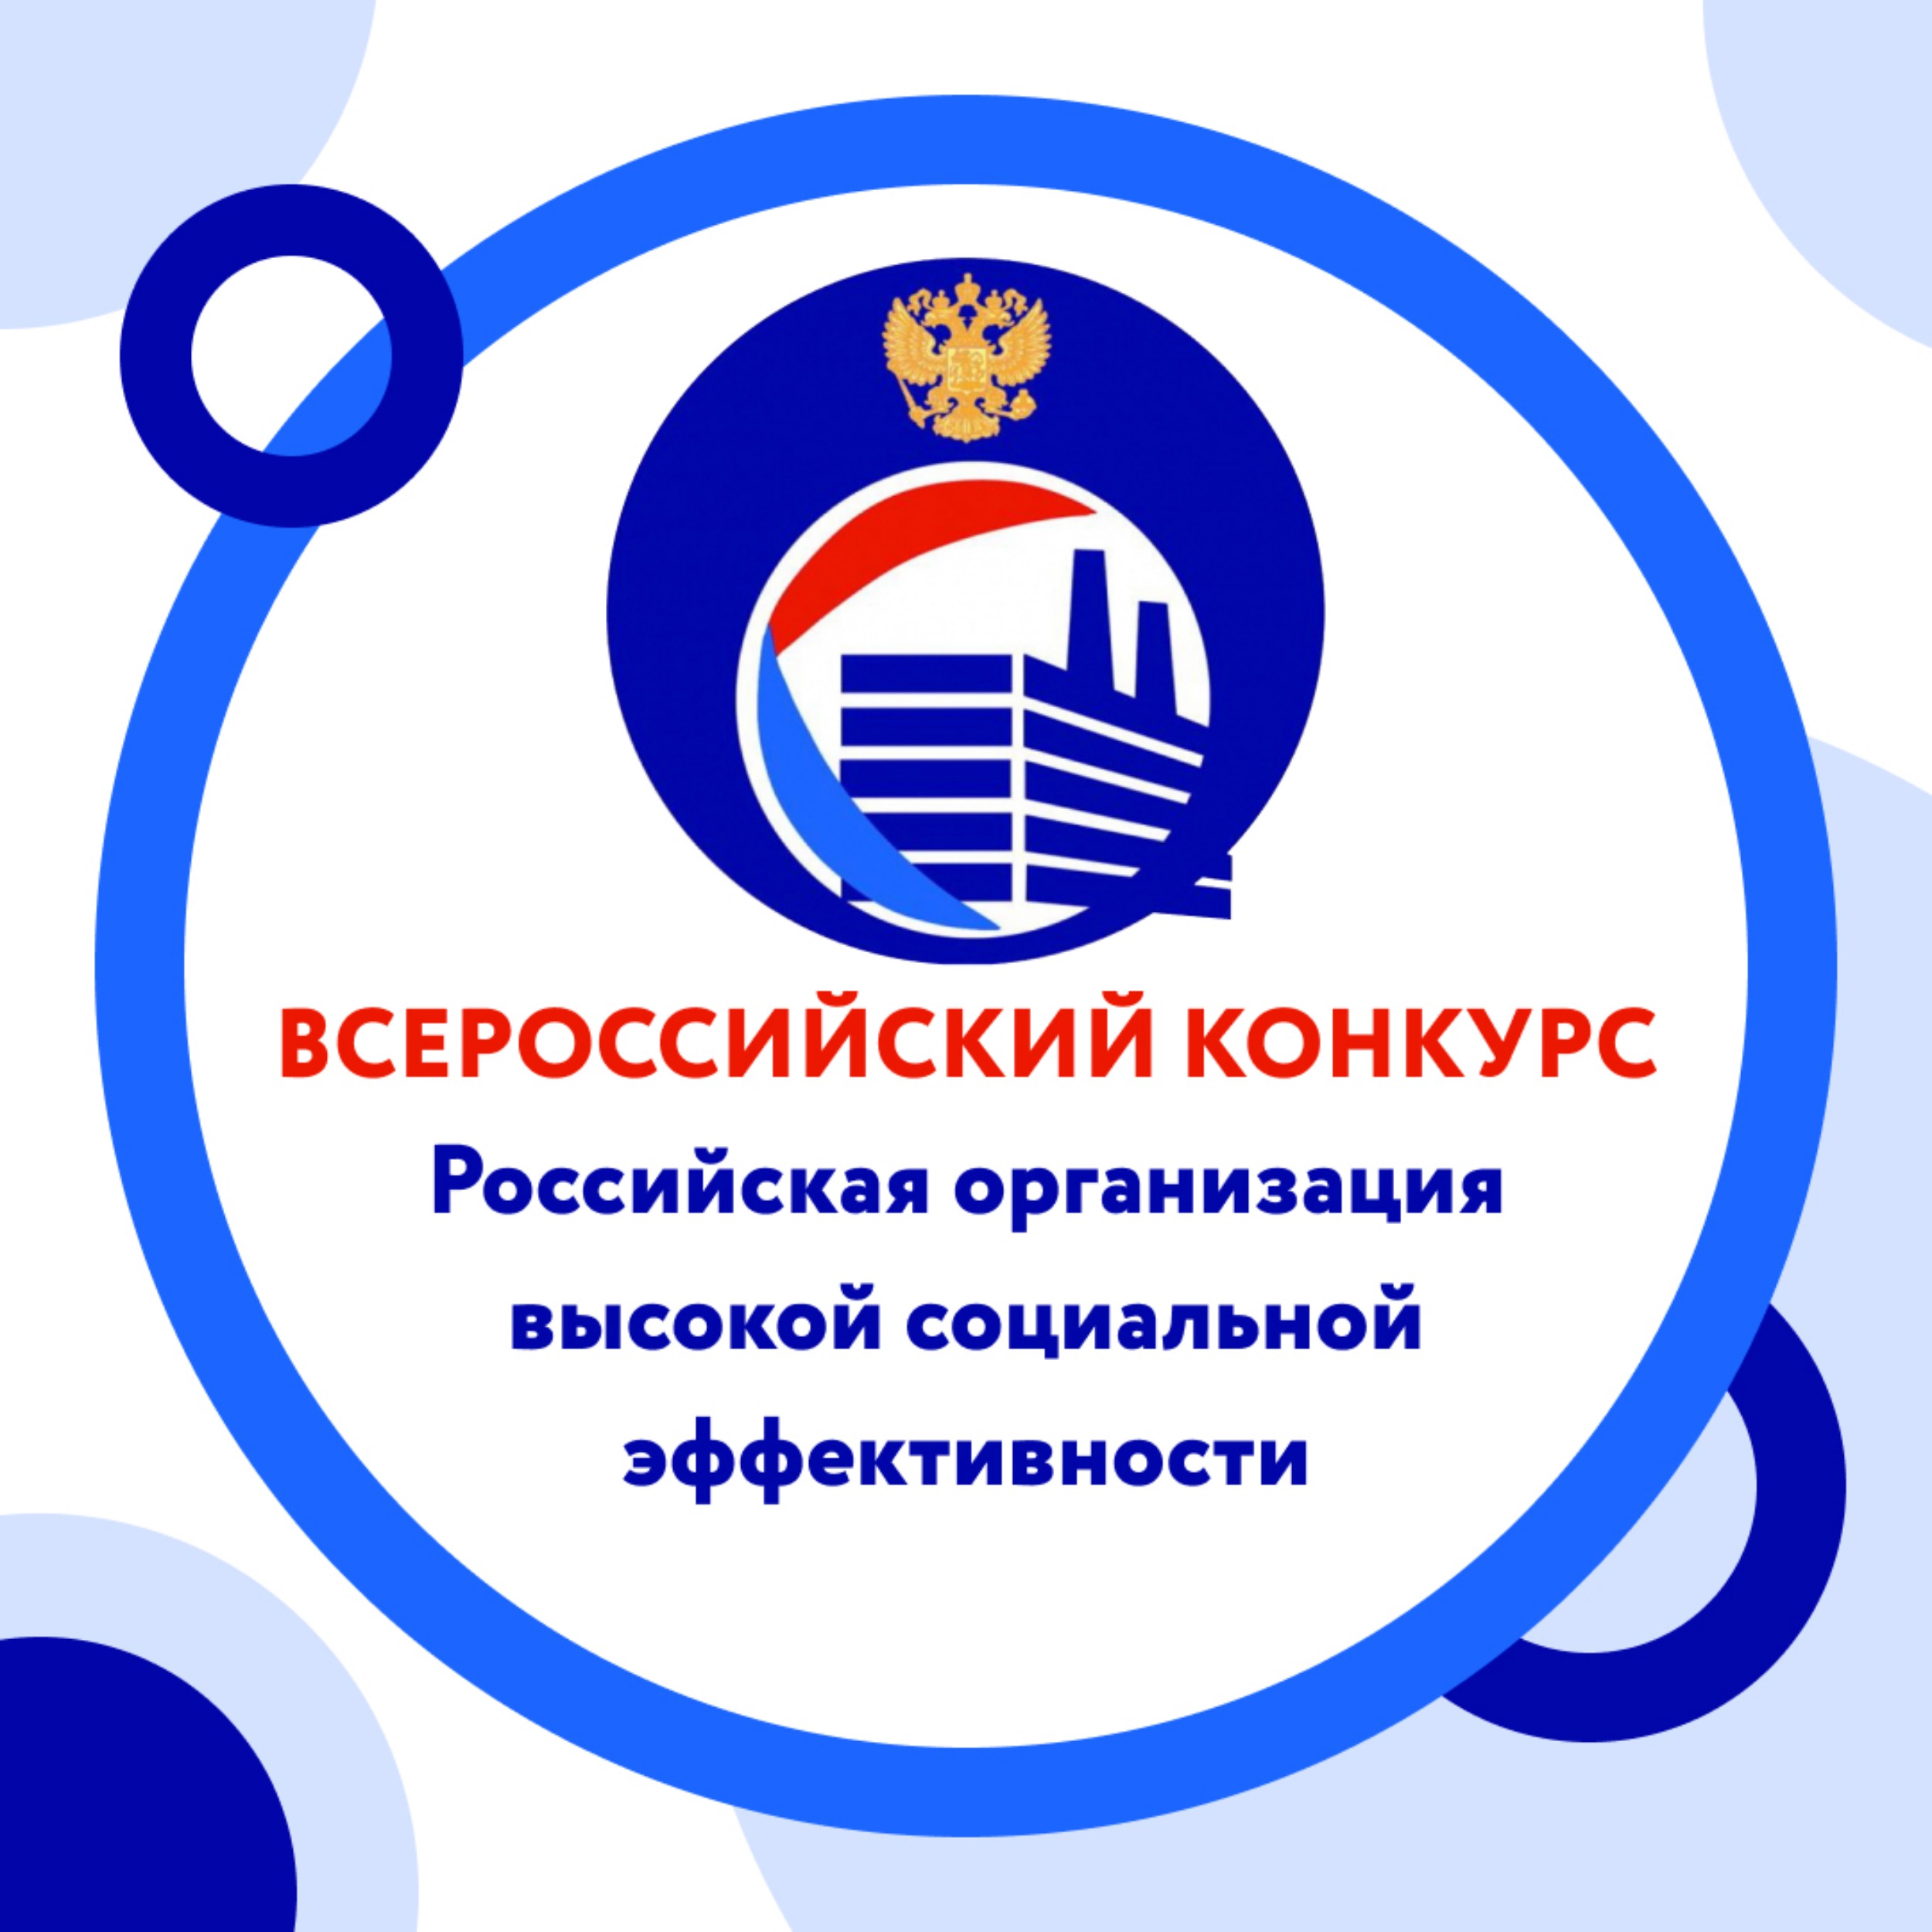 Проведение  всероссийского конкурса «Российская организация высокой социальной эффективности».